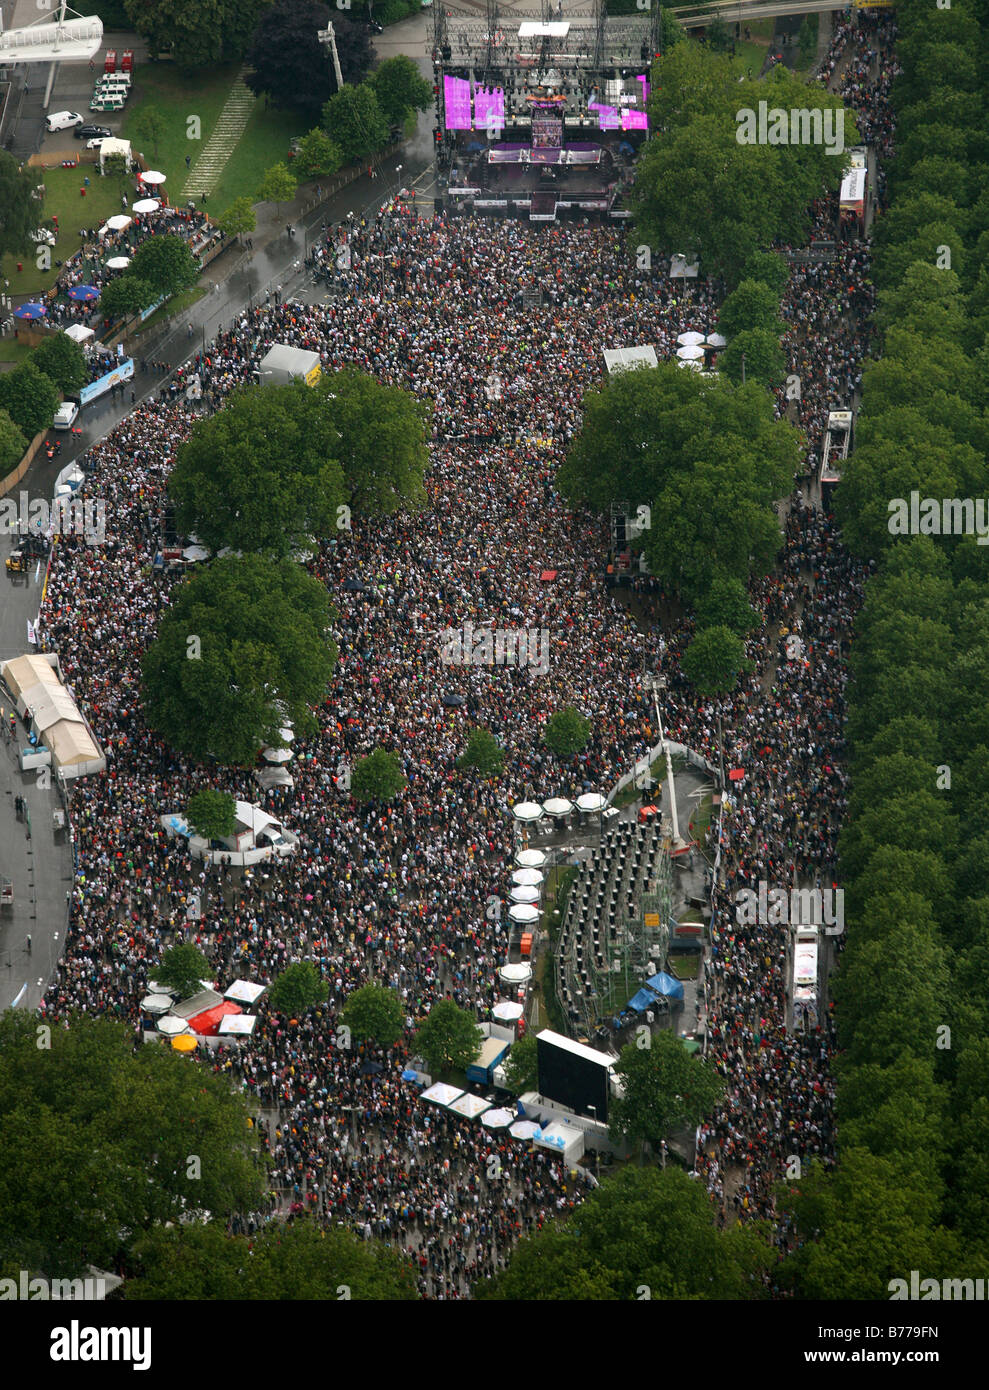 Luftaufnahme, Loveparade 2008 Festival, Menschenmenge auf der B1 Straße, Dortmund, Ruhr Gebiet, North Rhine-Westphalia, Deutschland, Europa Stockfoto